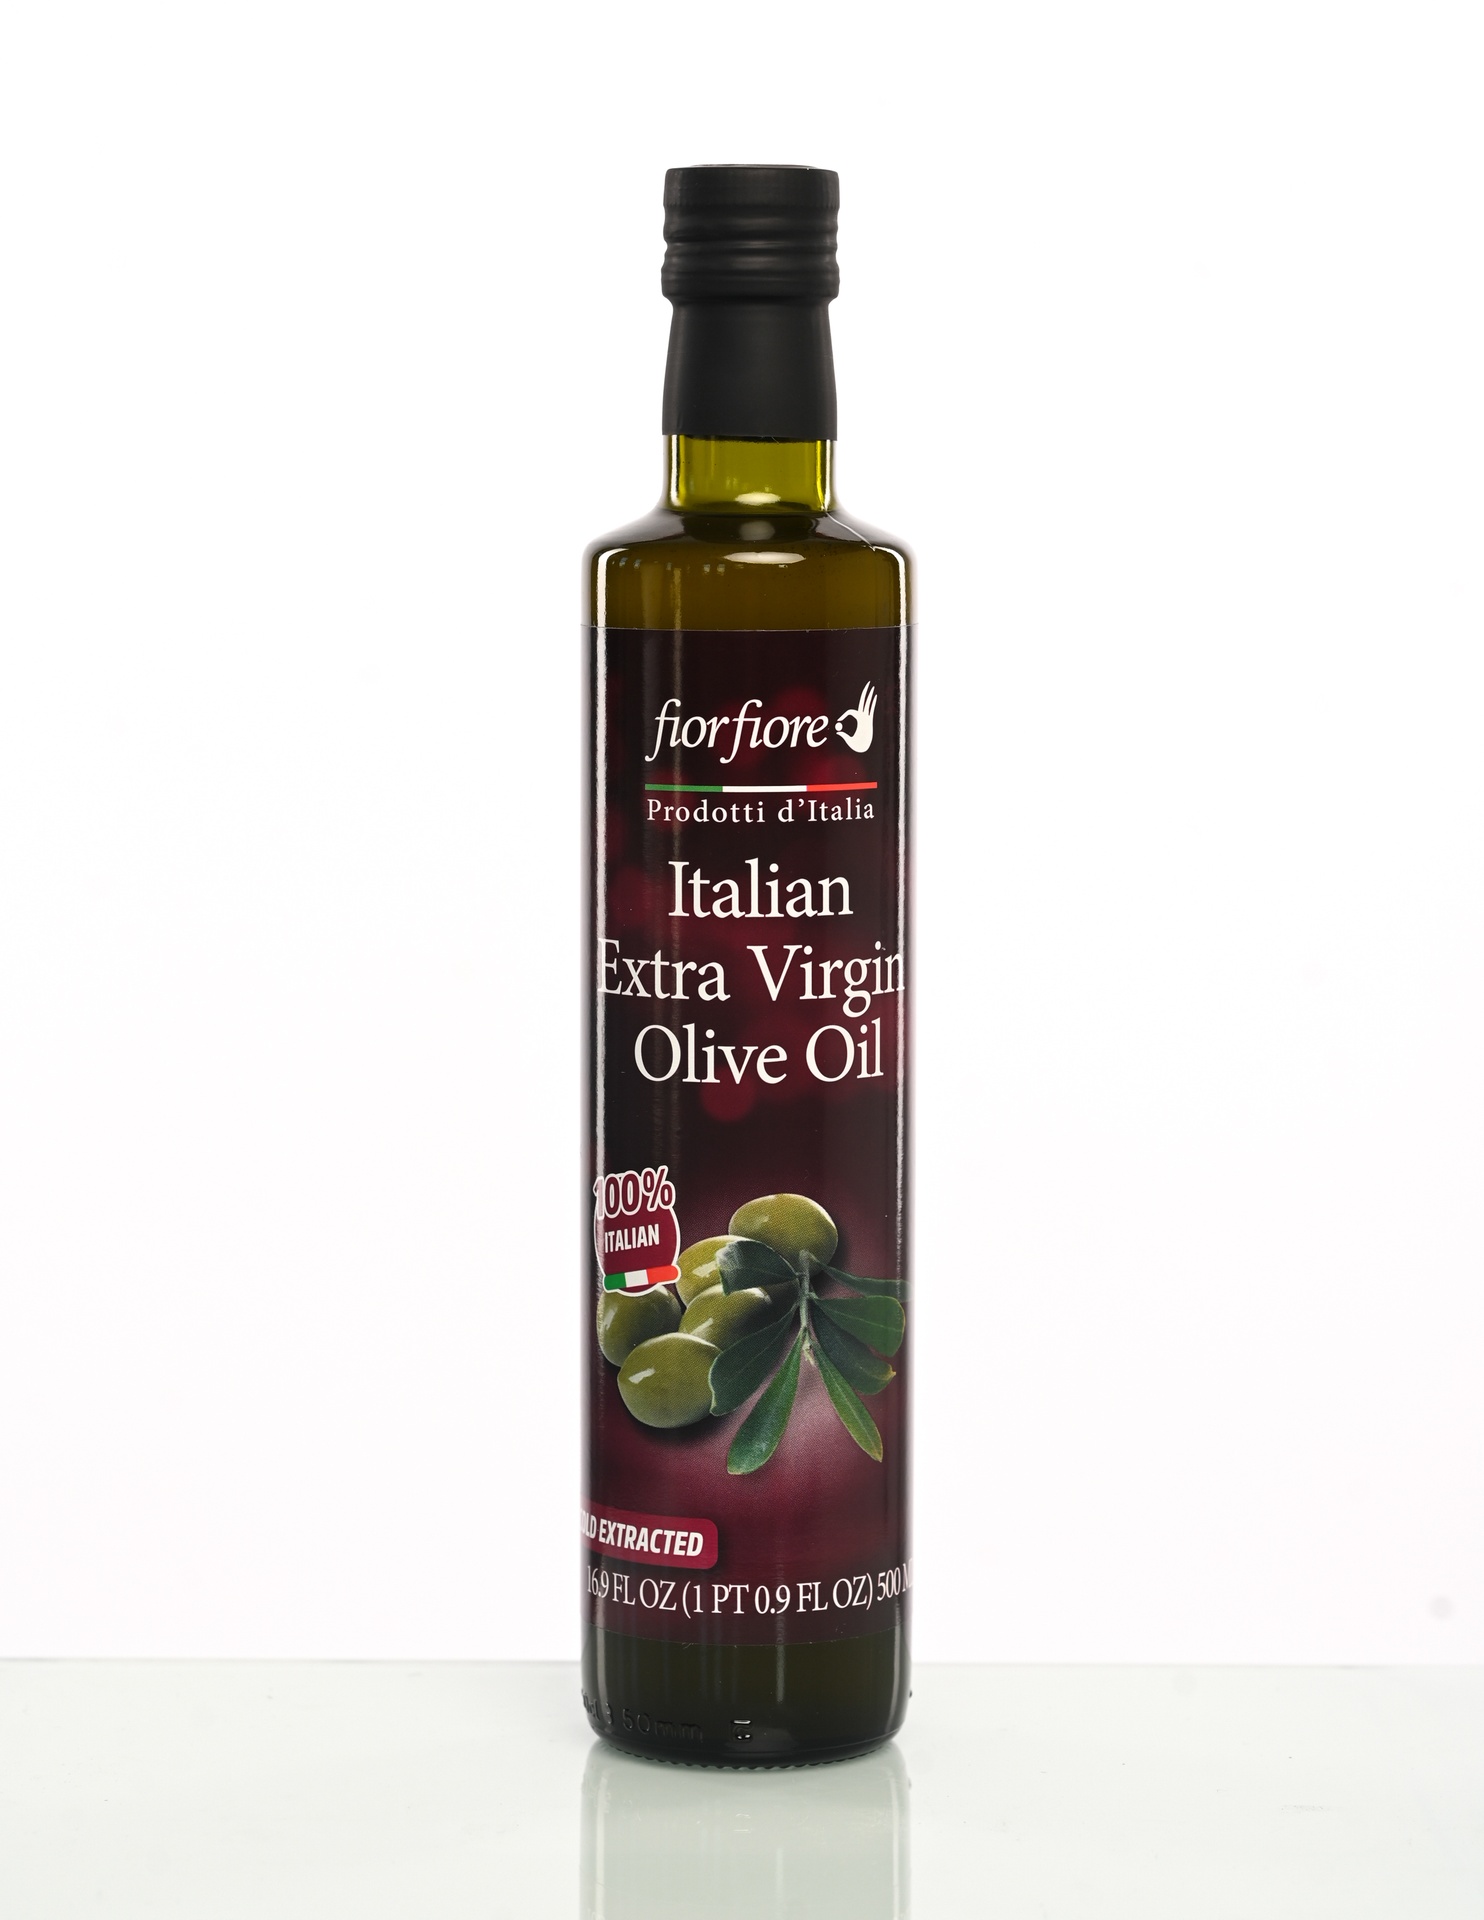 Fiorfiore Extra Virgin Olive Oil 100% Italian origin 16.9 oz